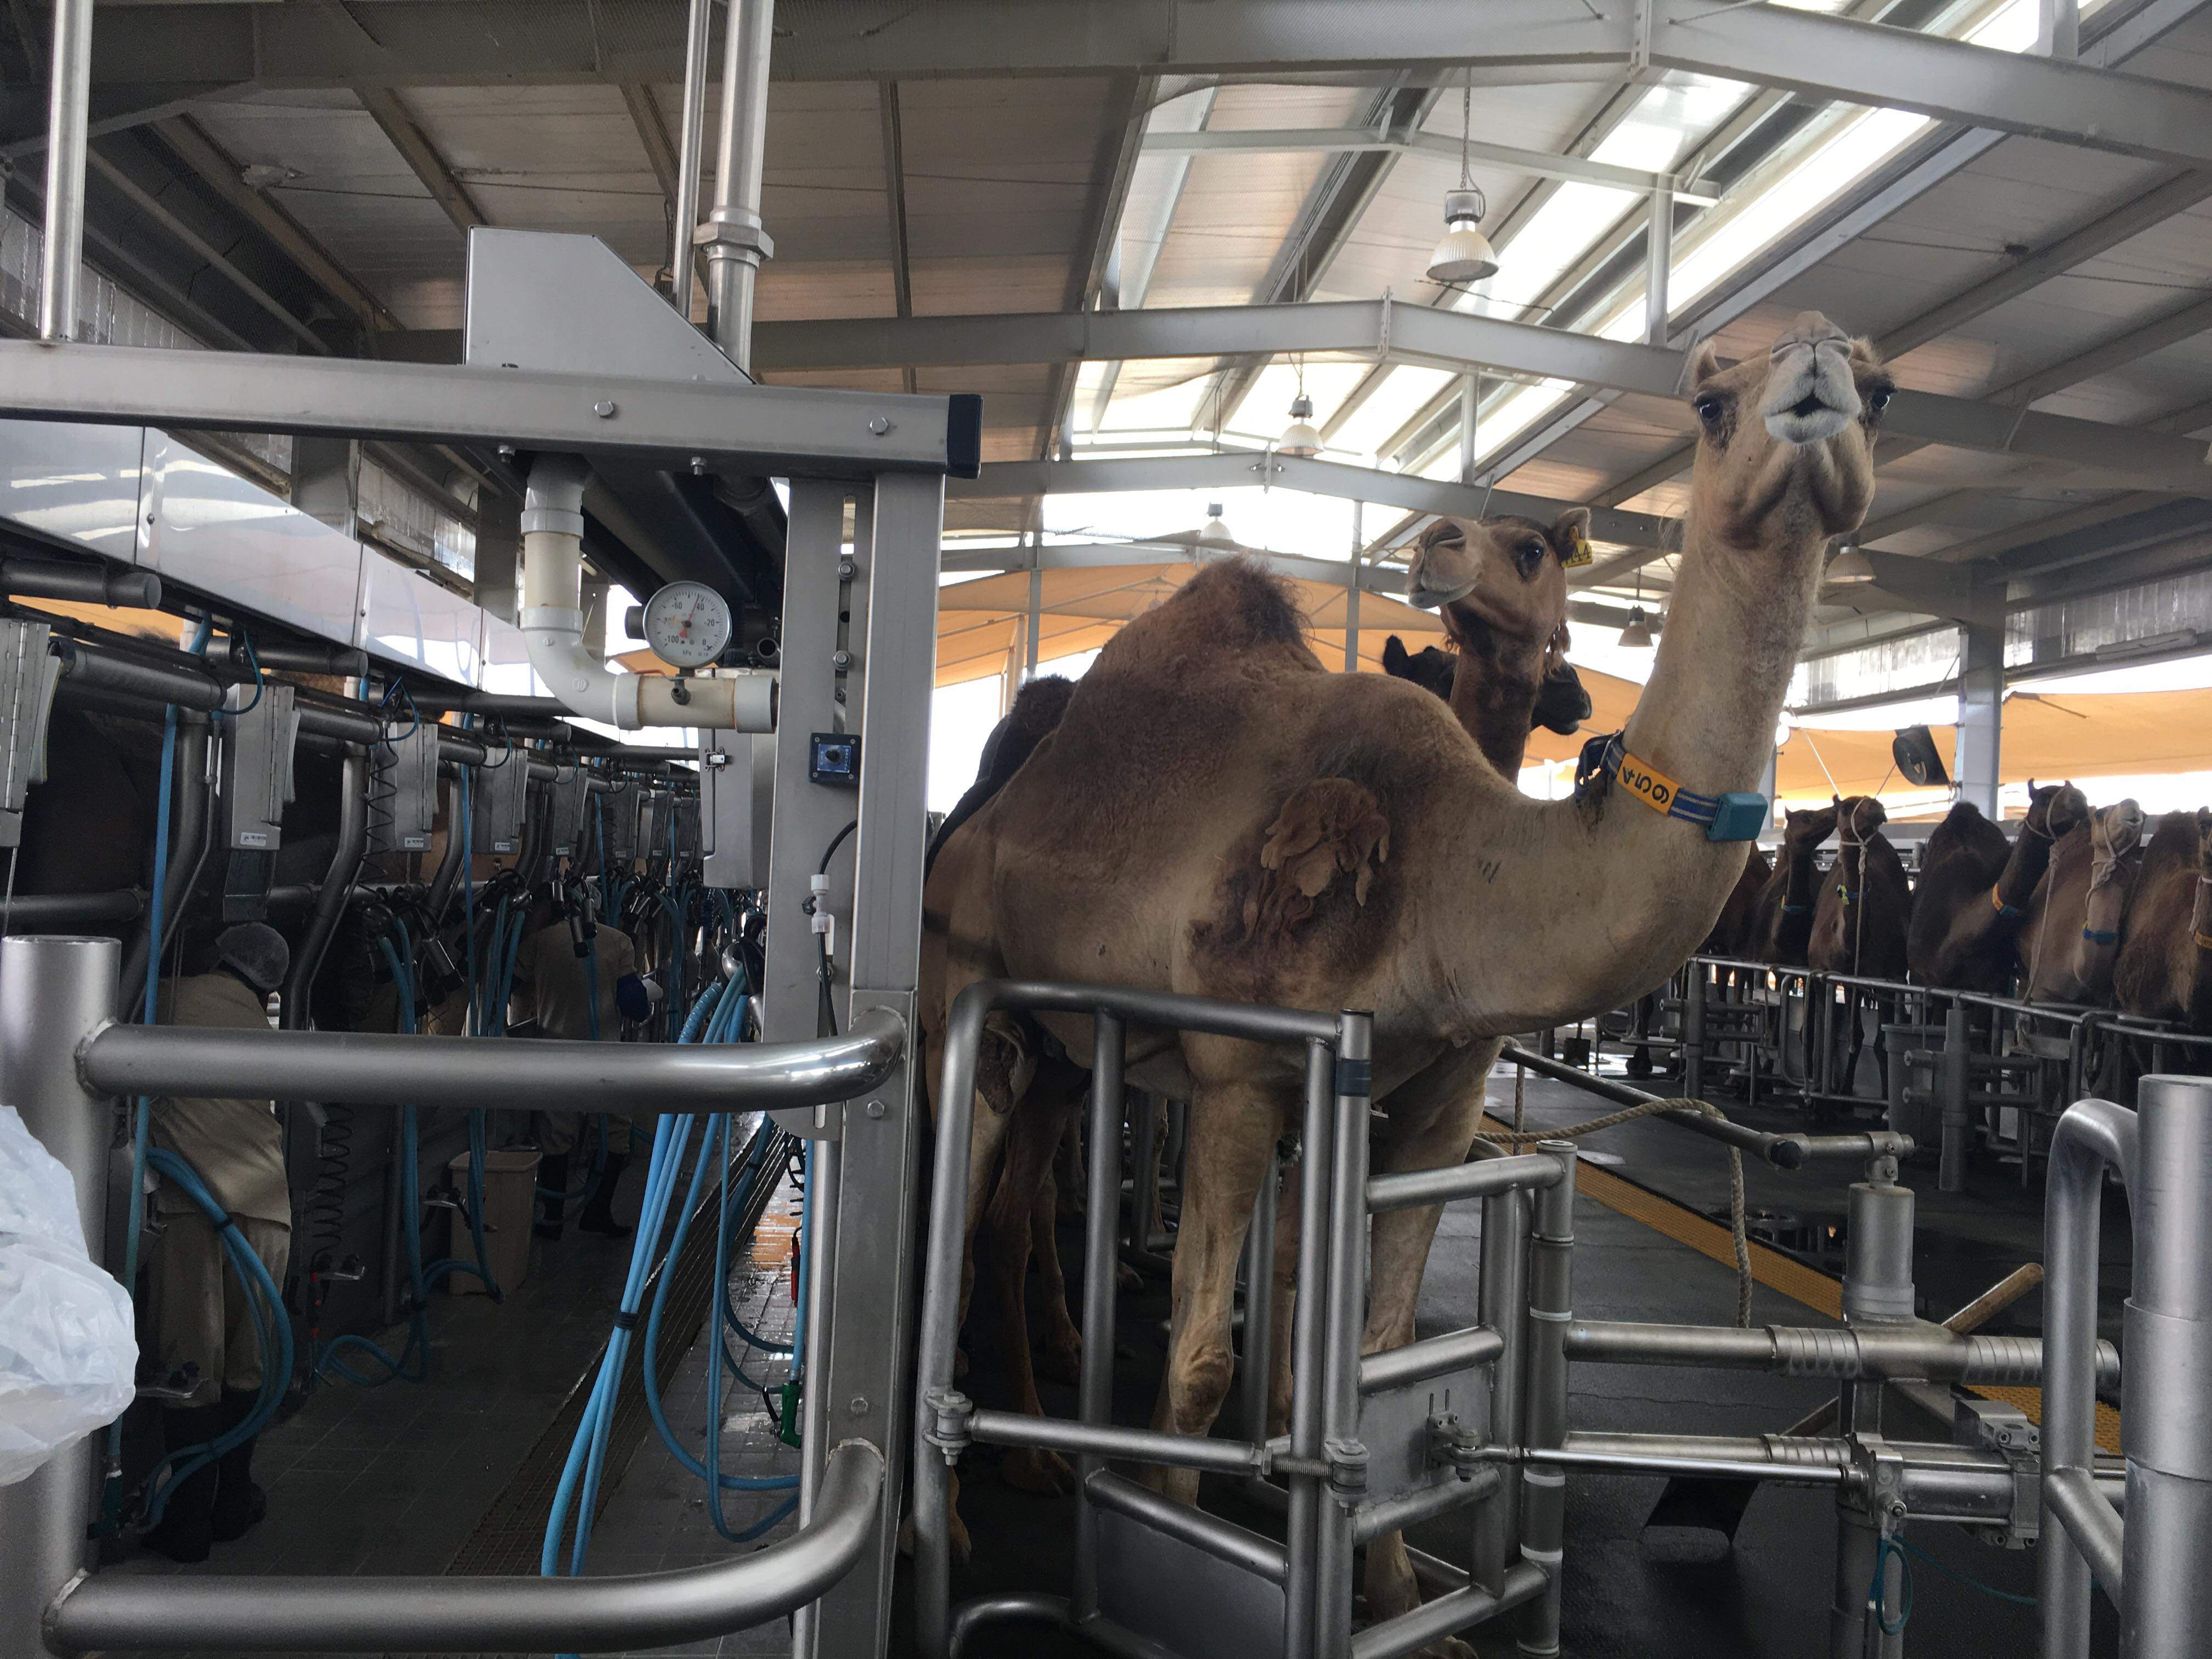 Rodzina Królewska Zjednoczonych Emiratów Arabskich posiada gigantyczne gospodarstwo, w którym produkowane jest mleko krowie, ale także wielbłądzie.